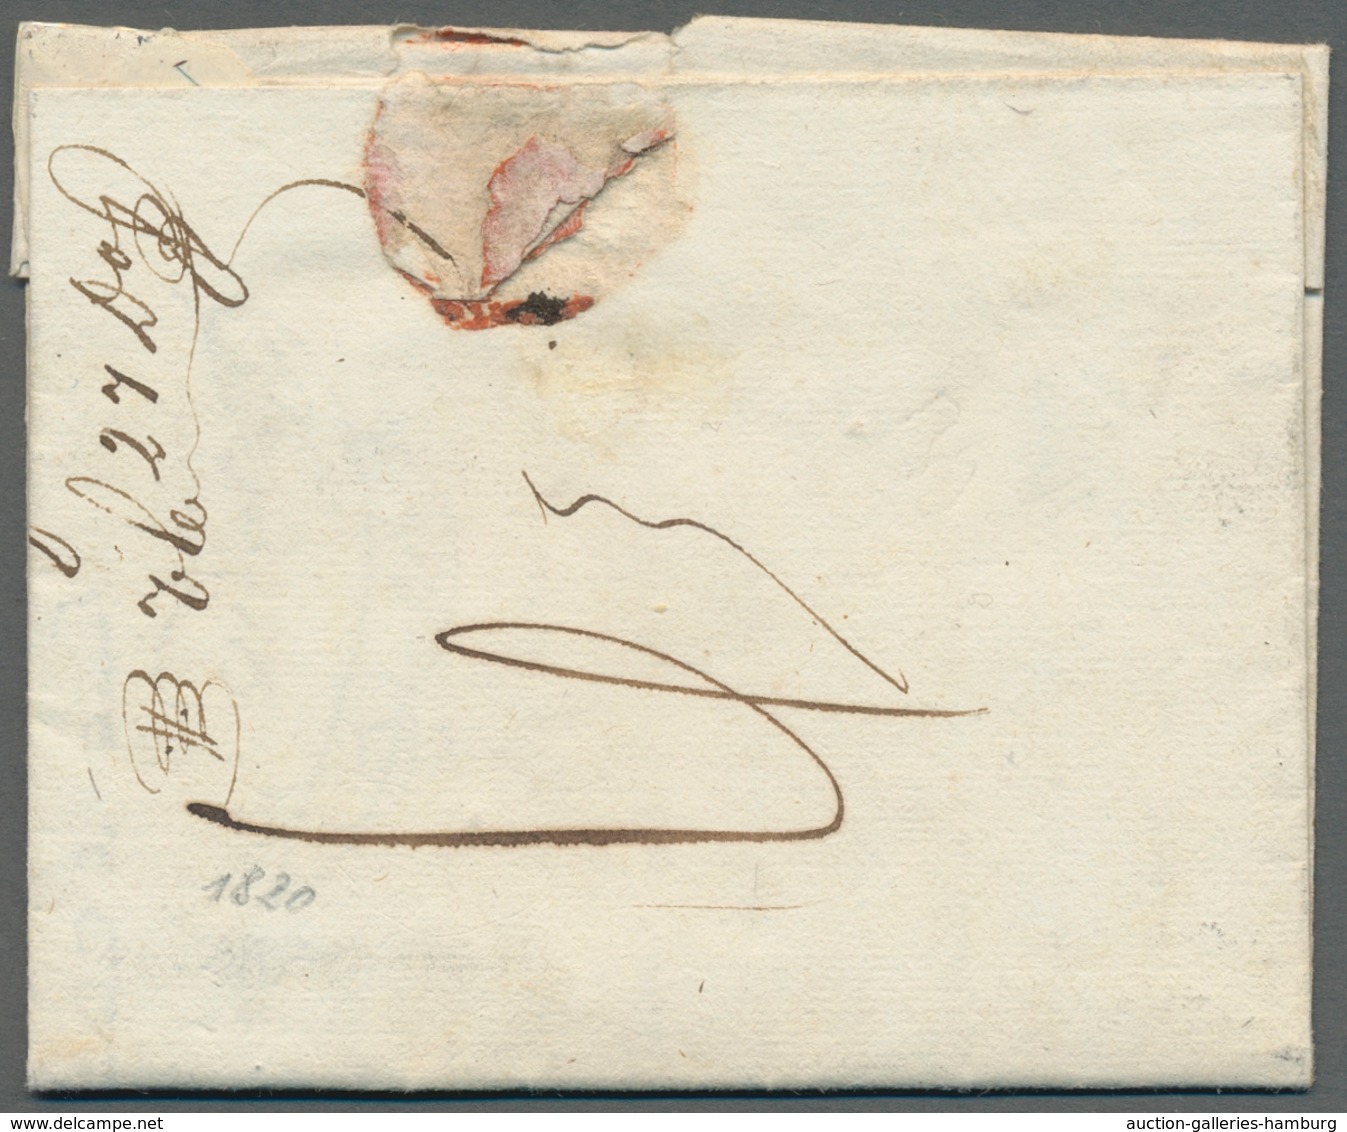 Frankreich - Vorphilatelie: 1696-1860, interessante Sammlung von etwa 110 Vorphilabriefen in einem A